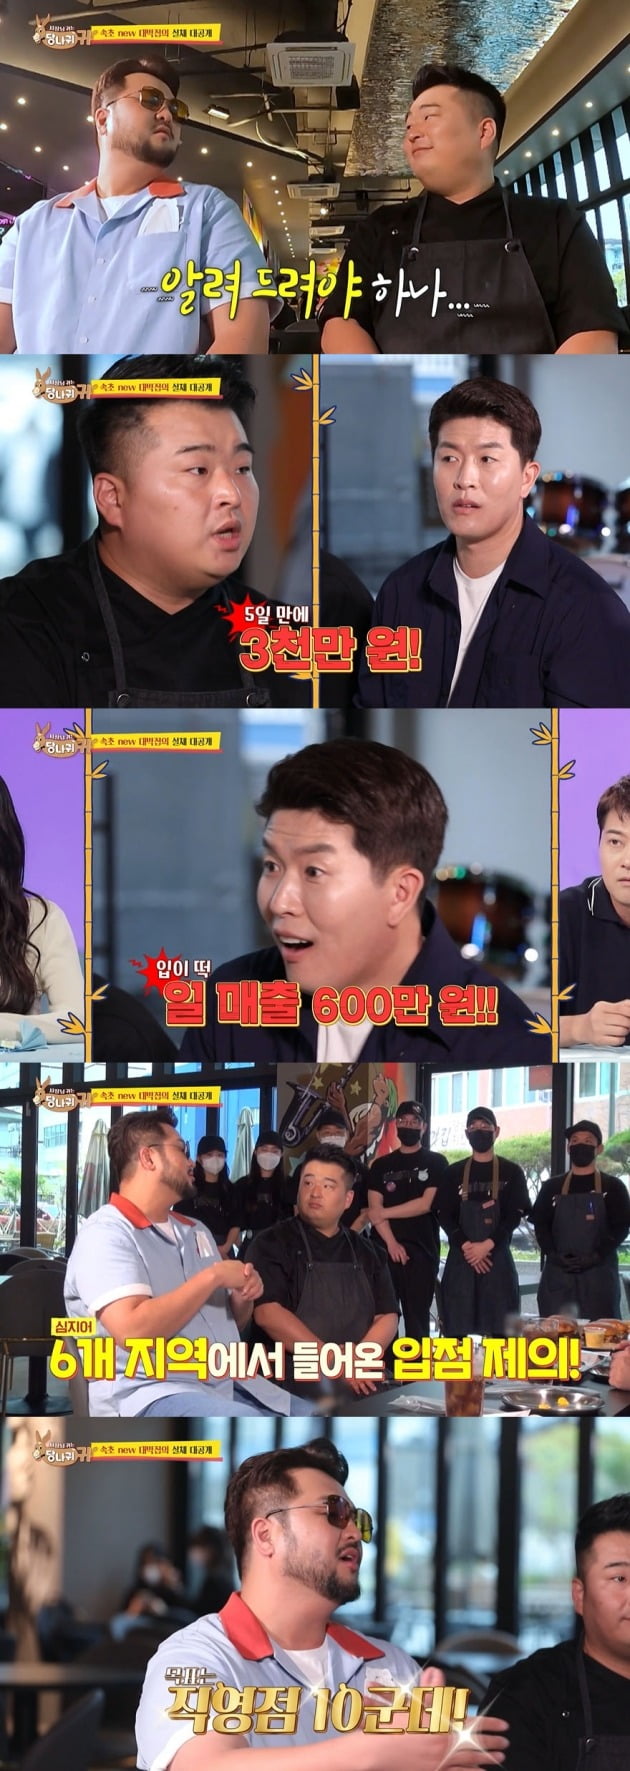 사진=KBS2 '사장님 귀는 당나귀 귀' 영상 캡처